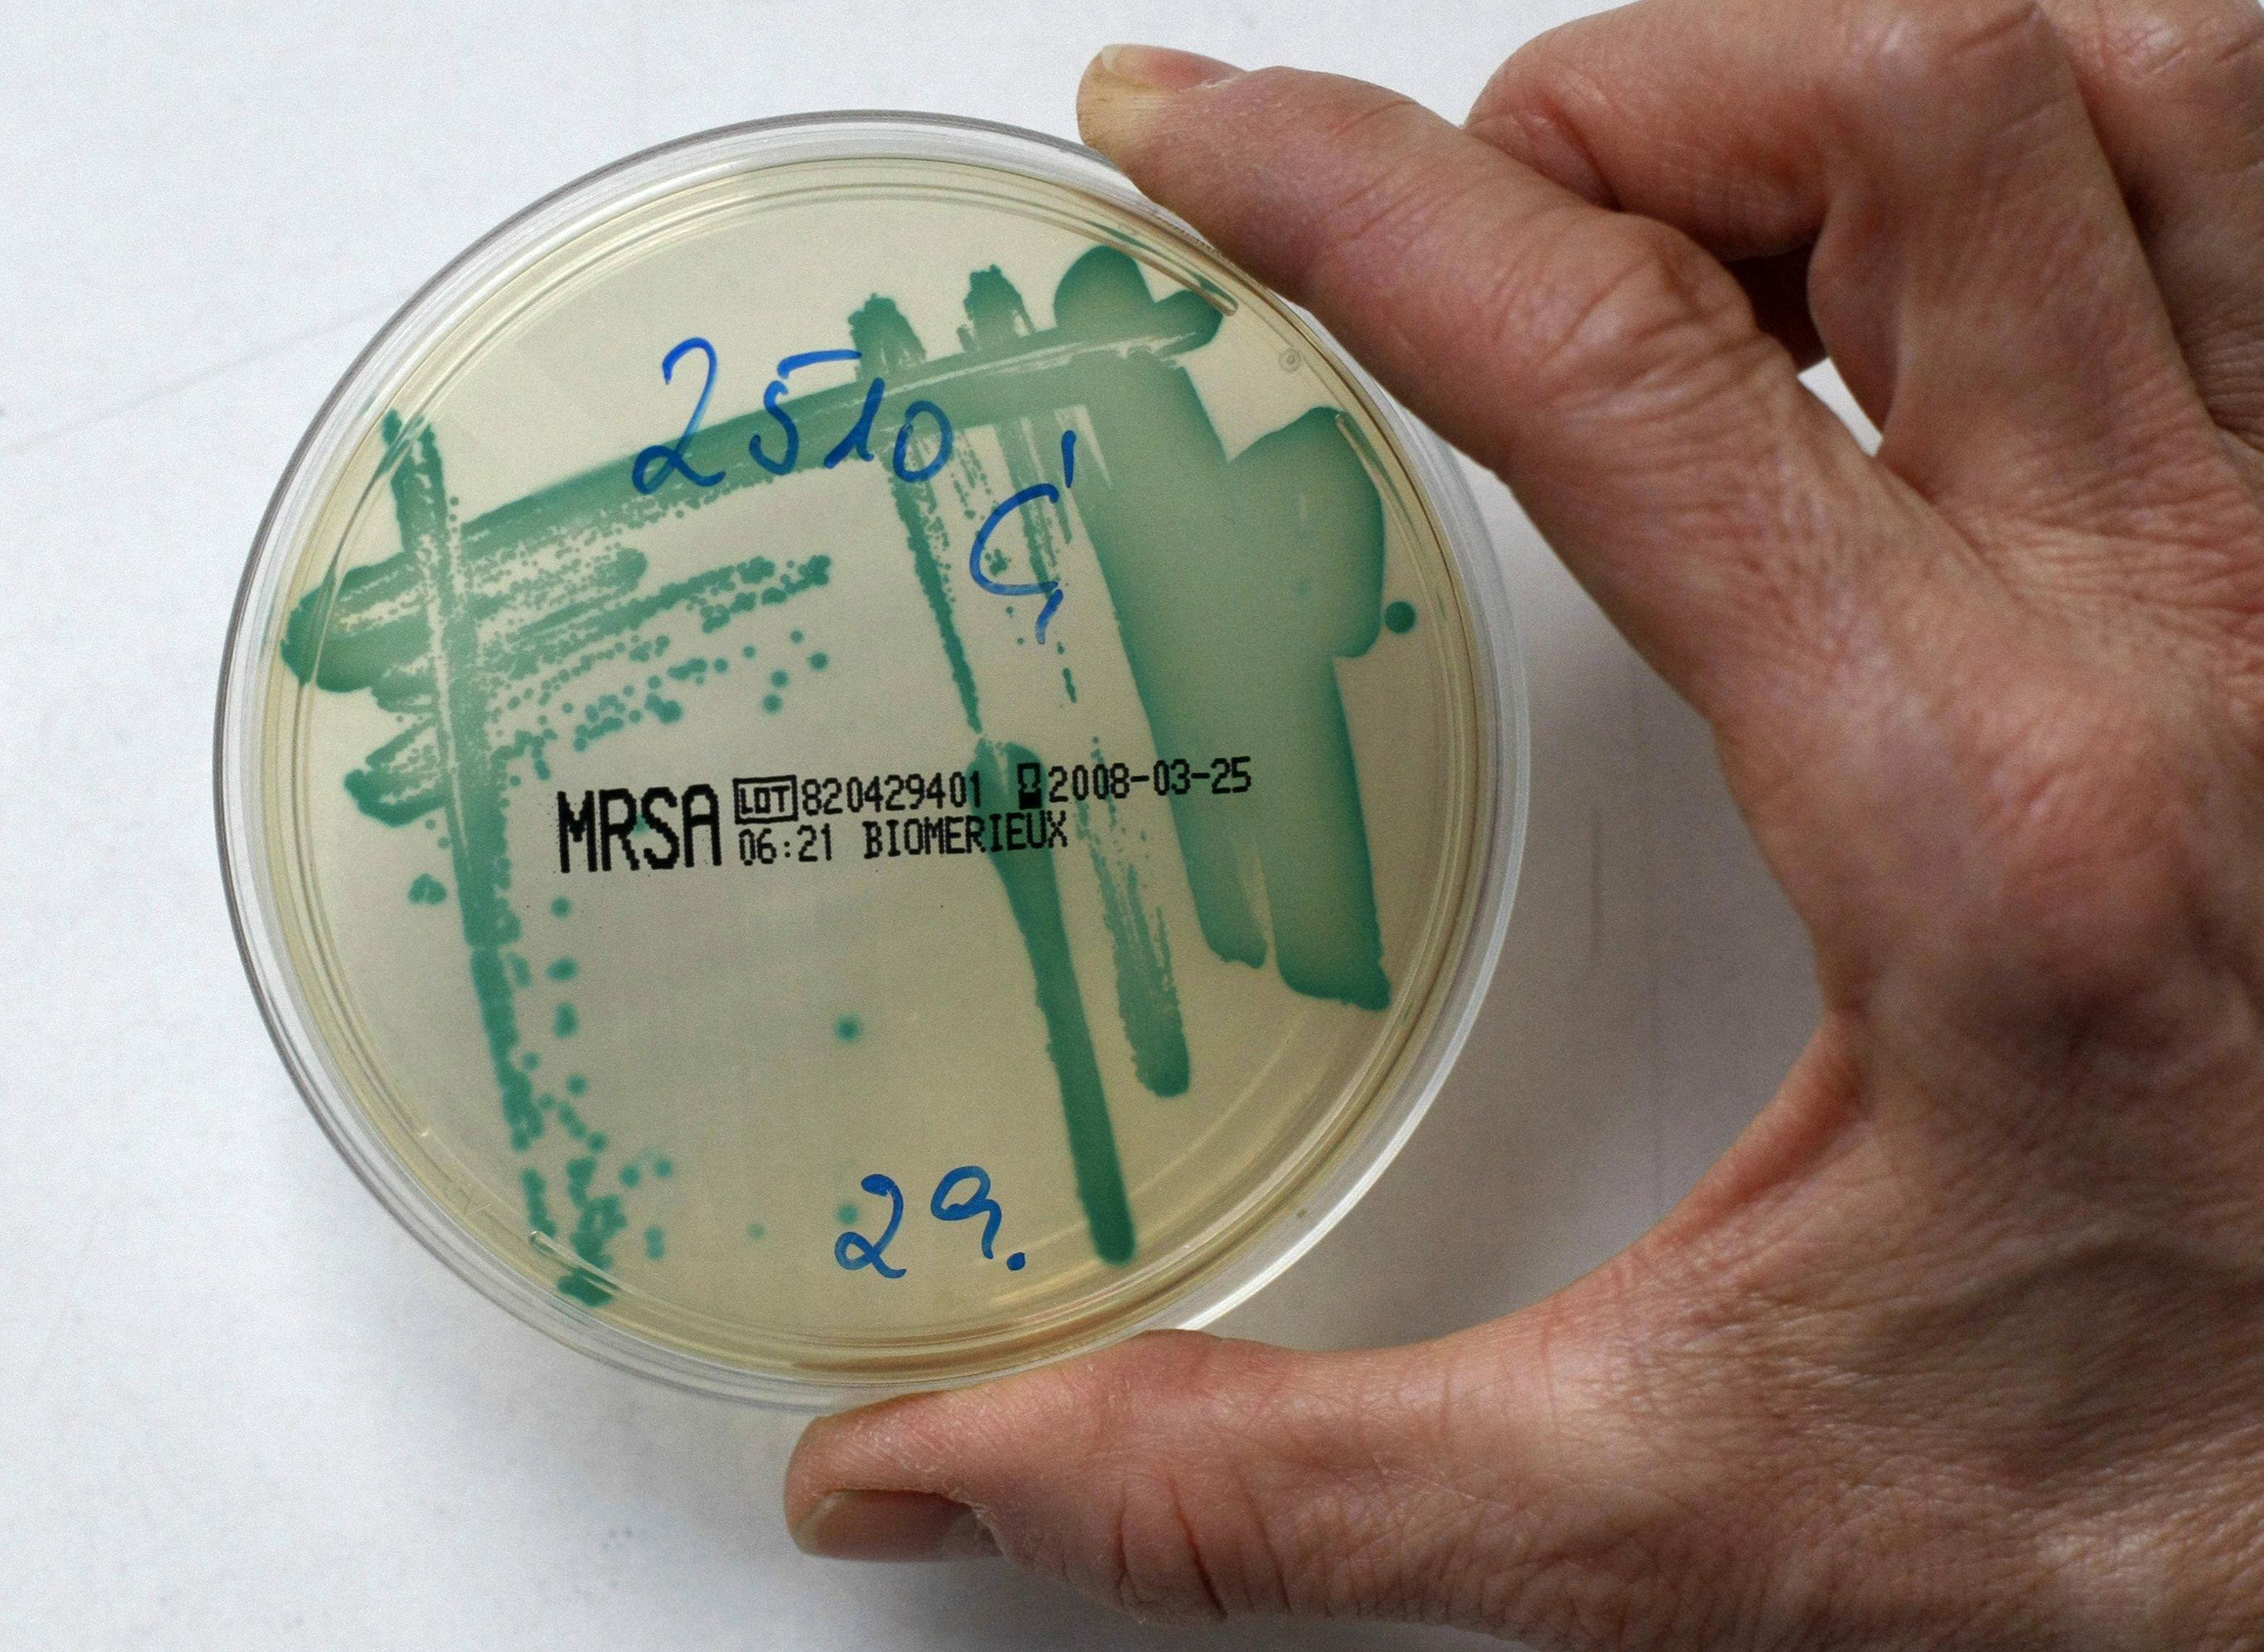 Antibiotic-resistant bacteria and newborns